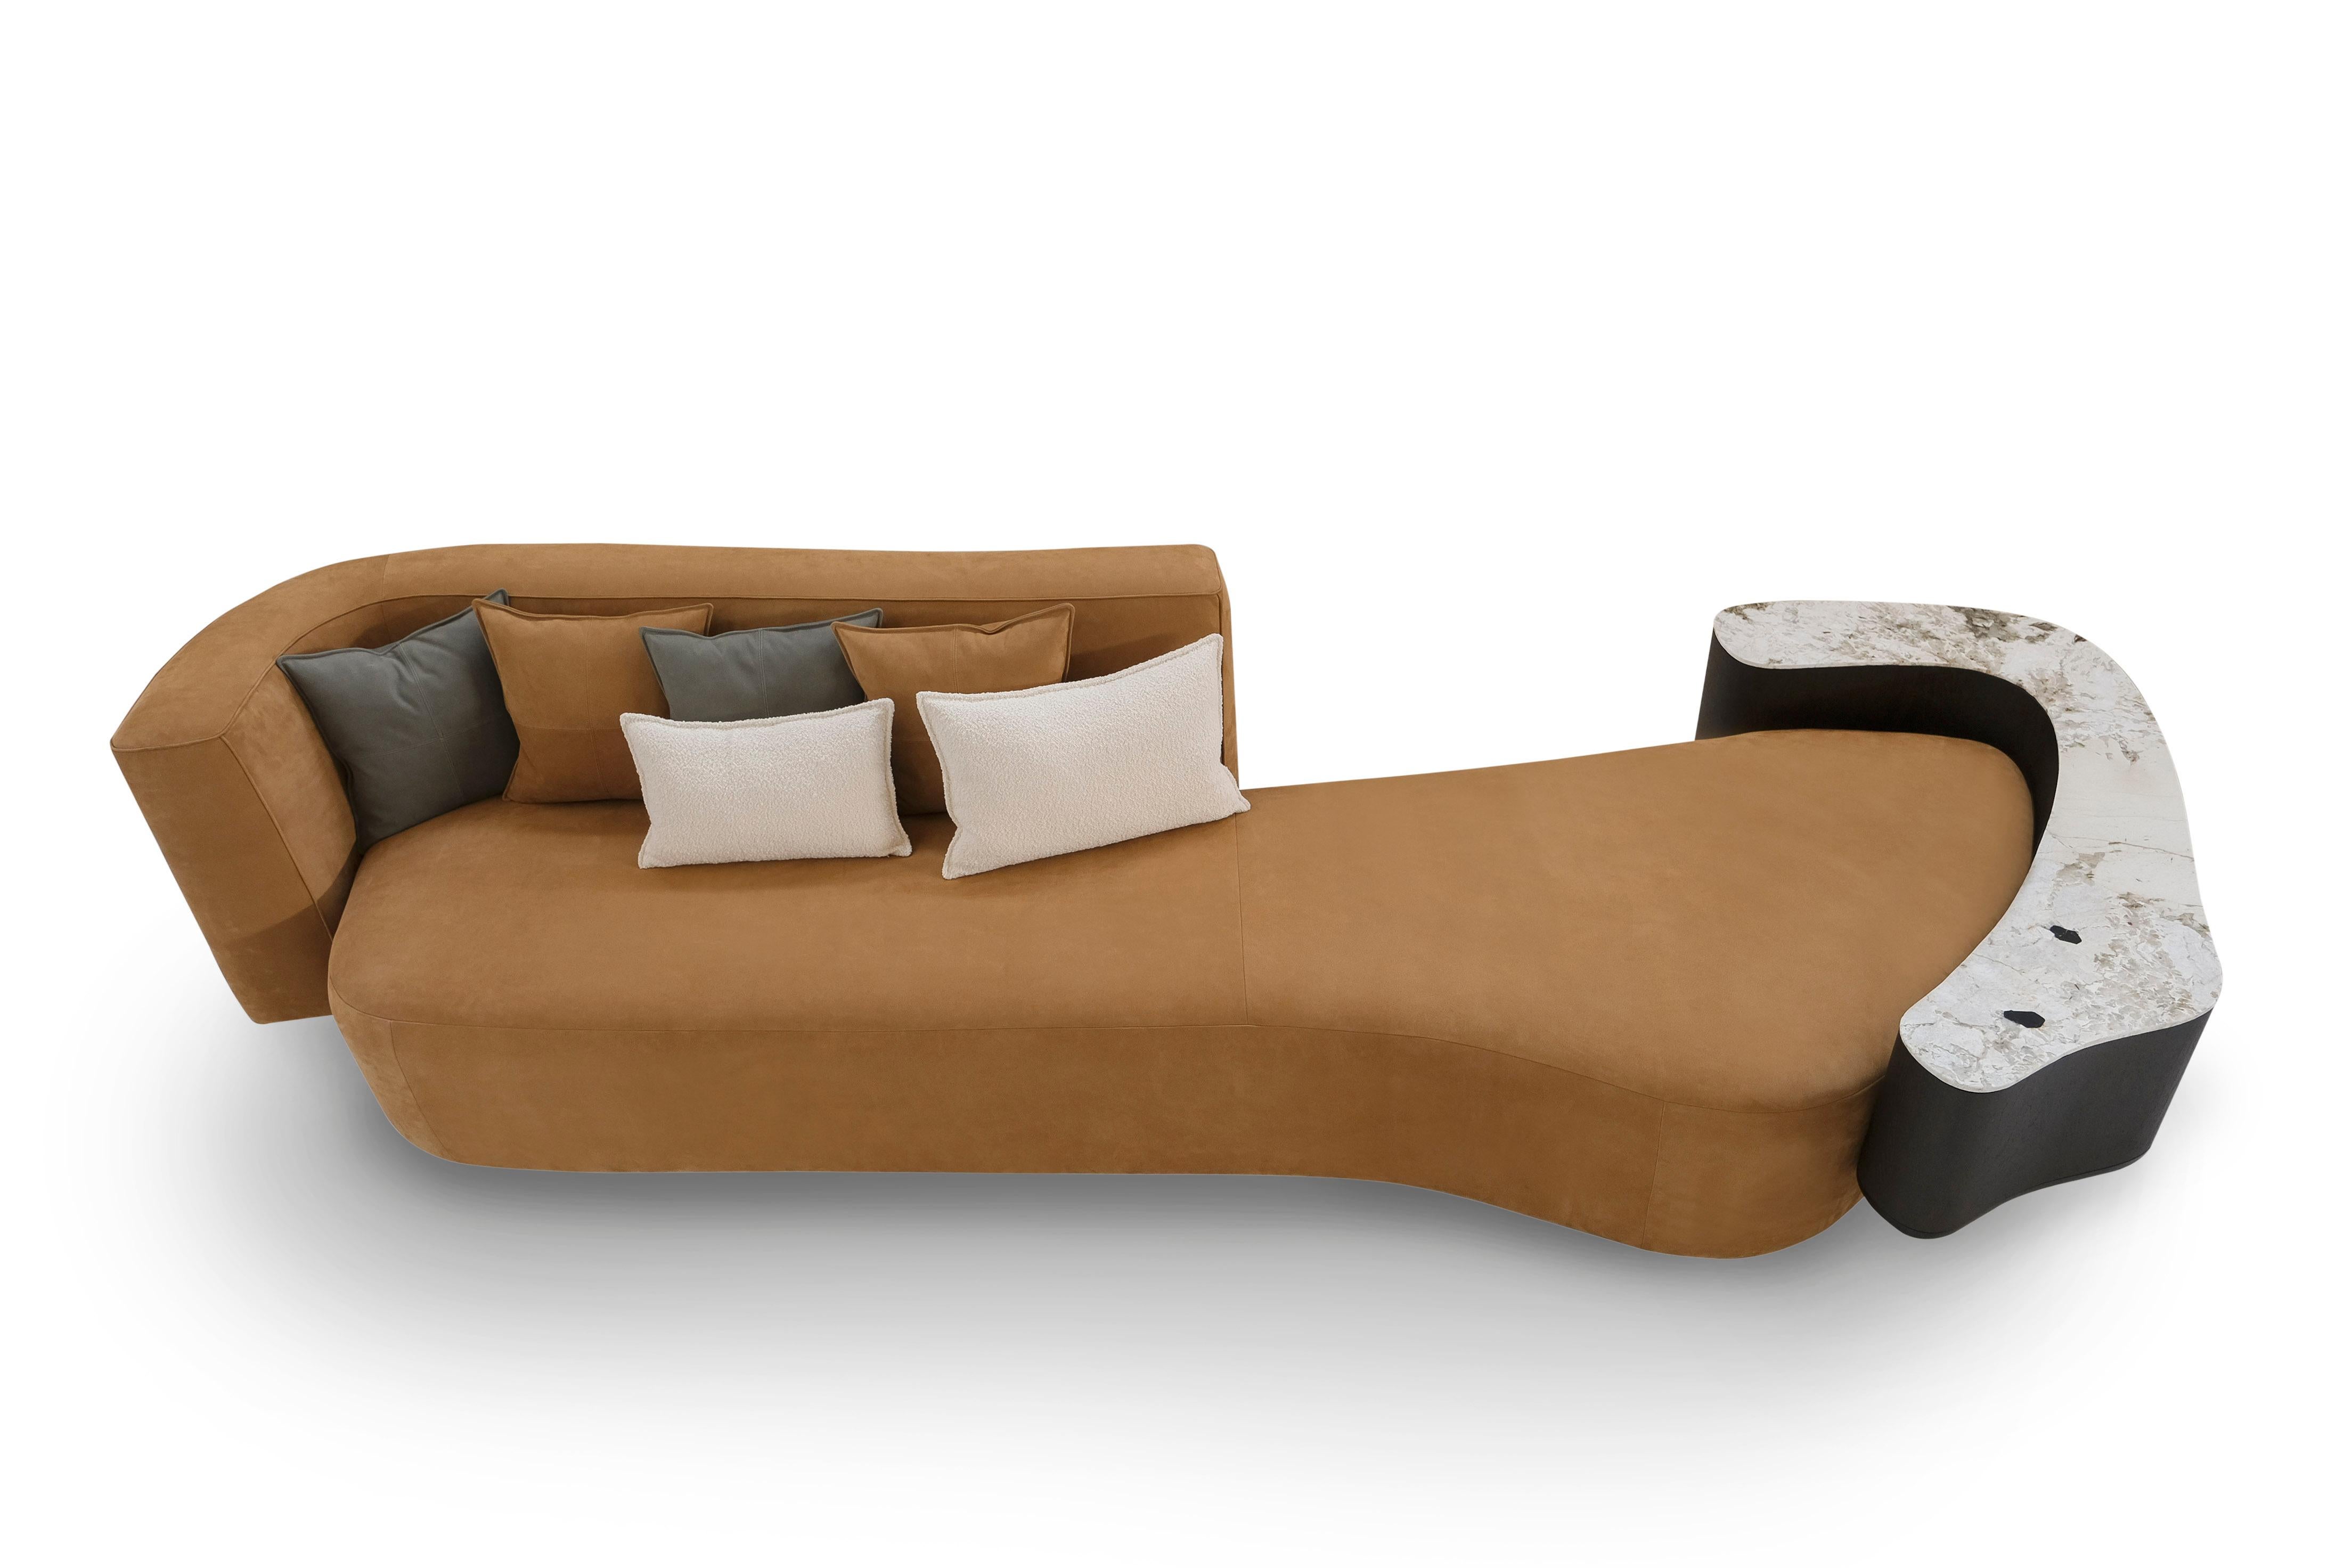 Galapinhos Lounge Sofa, Contemporary Collection, handgefertigt in Portugal - Europa von Greenapple.

Das Galapinhos-Ledersofa wurde entworfen, um die Essenz der Natur in den Innenraum zu bringen und sich von der faszinierenden Naturlandschaft des